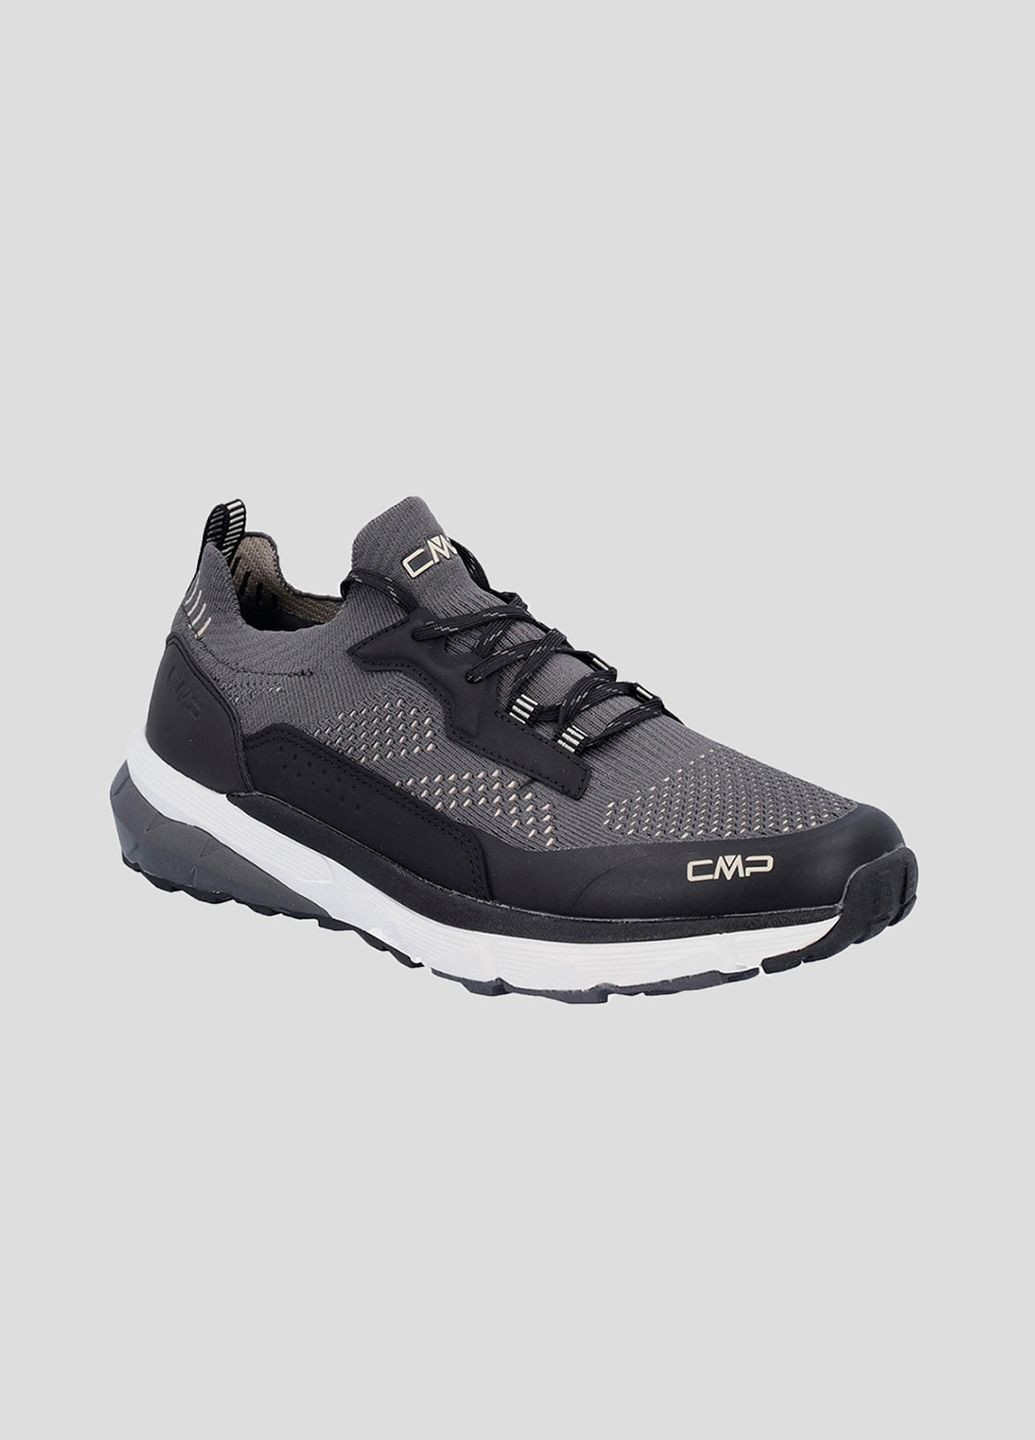 Серые демисезонные темно-серые кроссовки для спорта alyso fitness shoe CMP